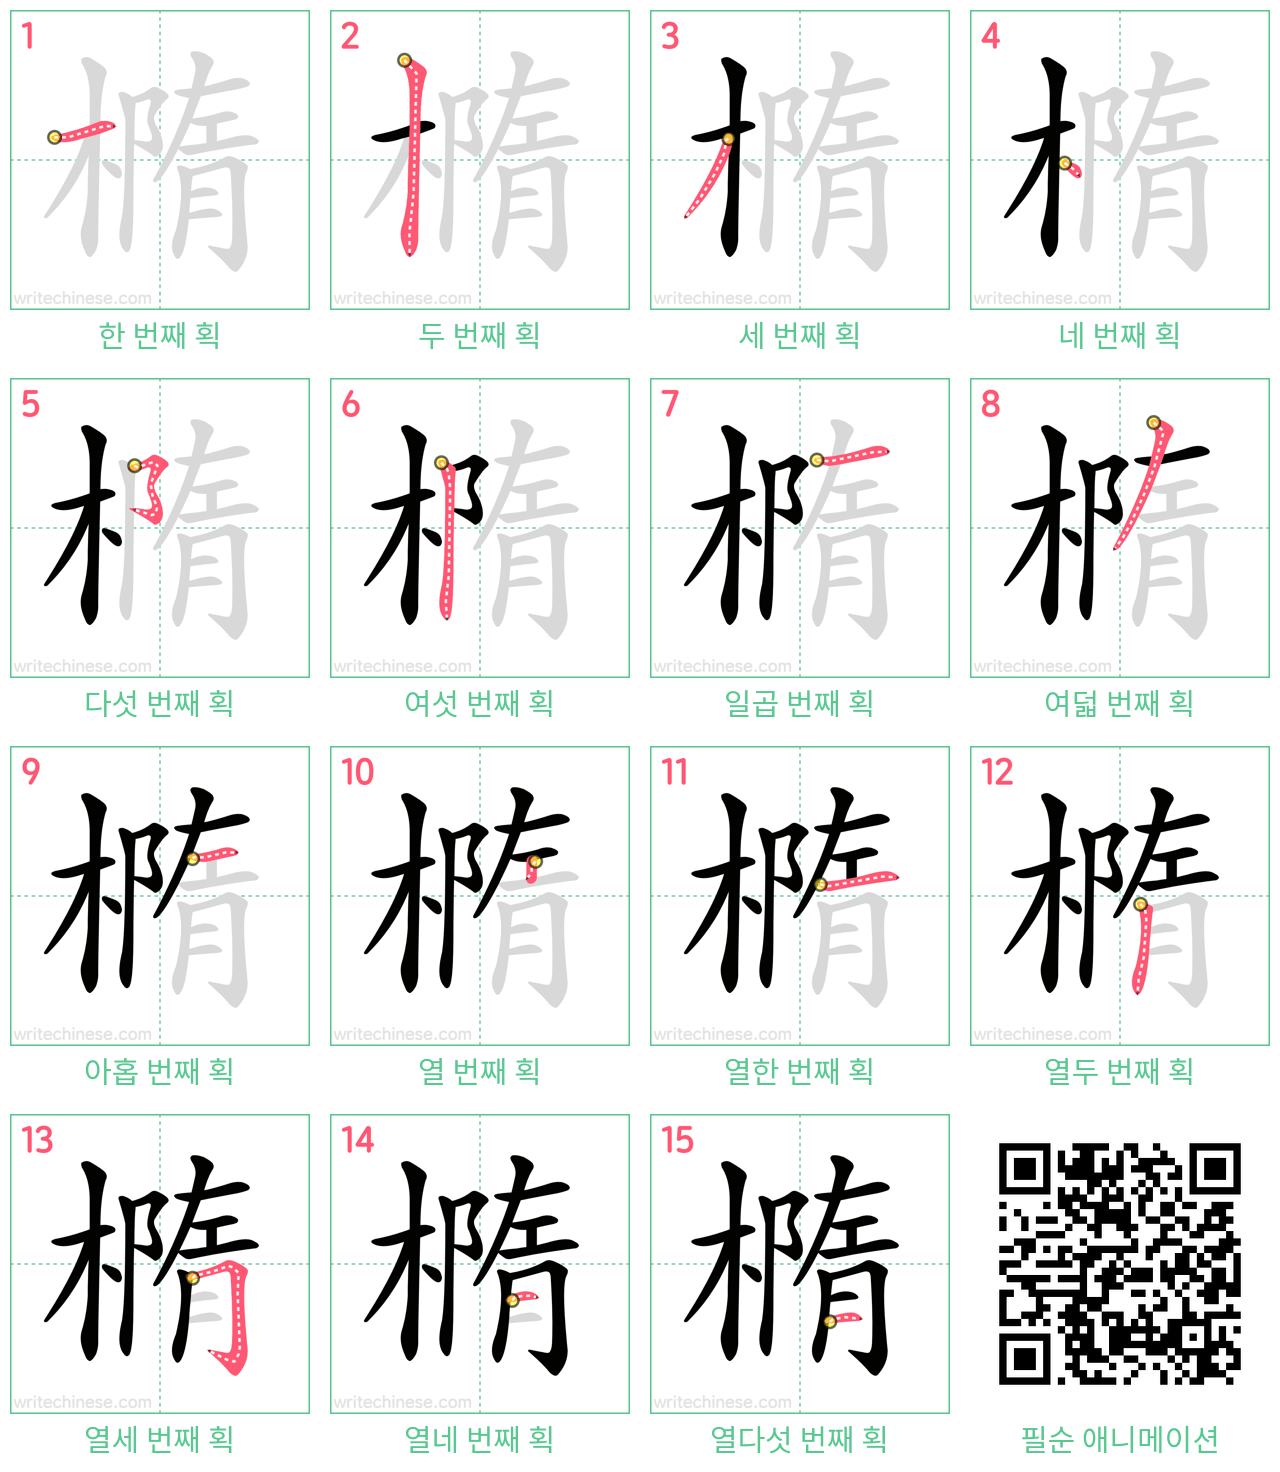 橢 step-by-step stroke order diagrams